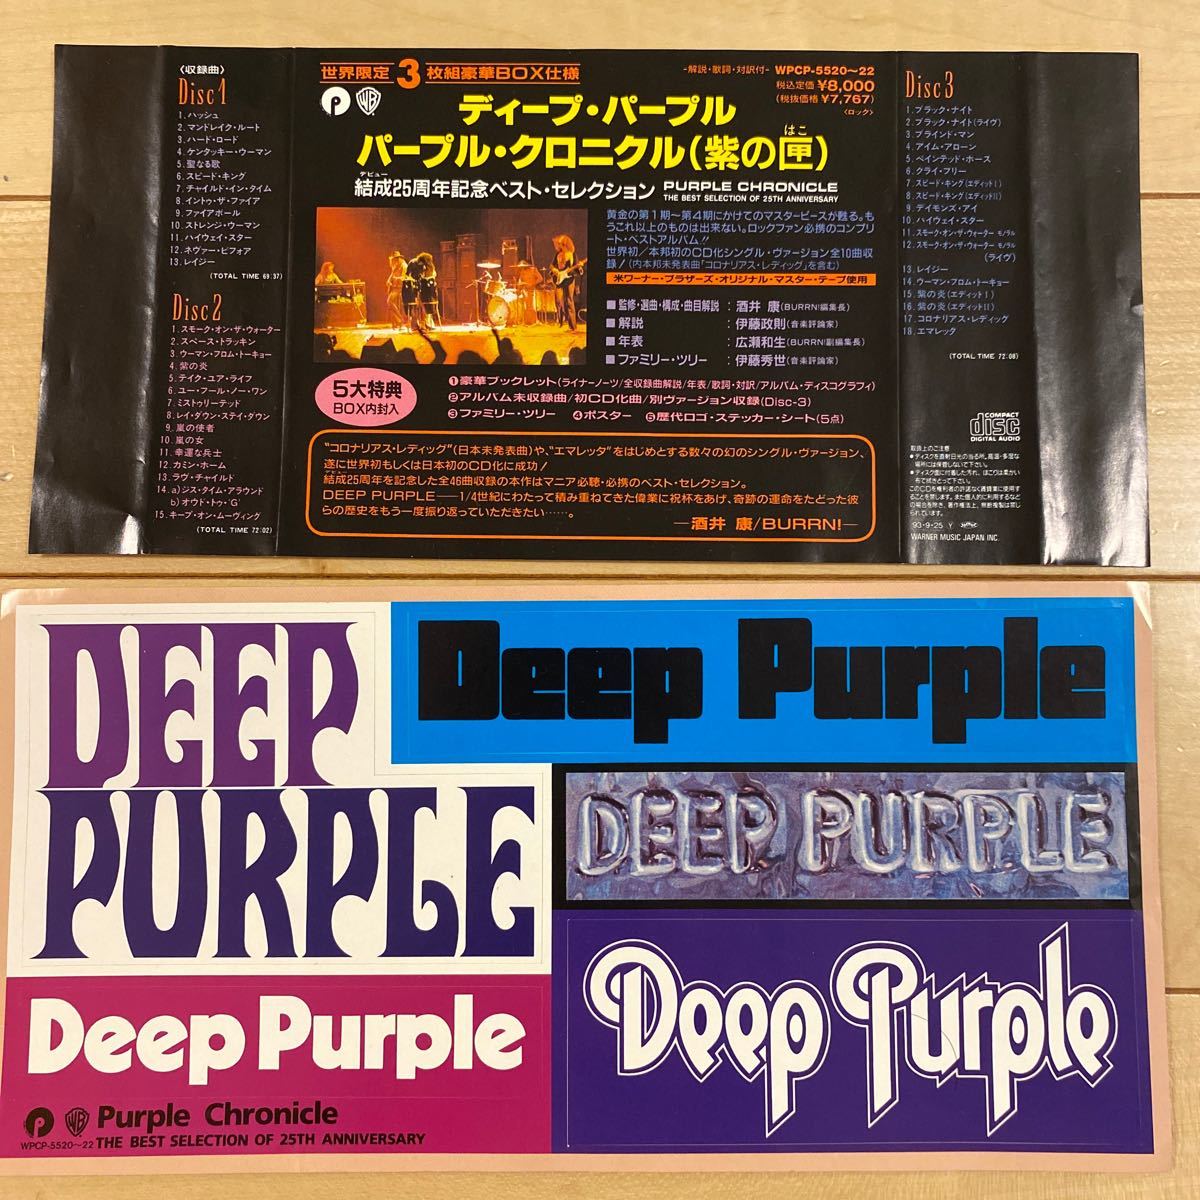 Deep Purple / Purple Chronicle ディープパープル結成25周年記念ベストセレクション3枚組CD